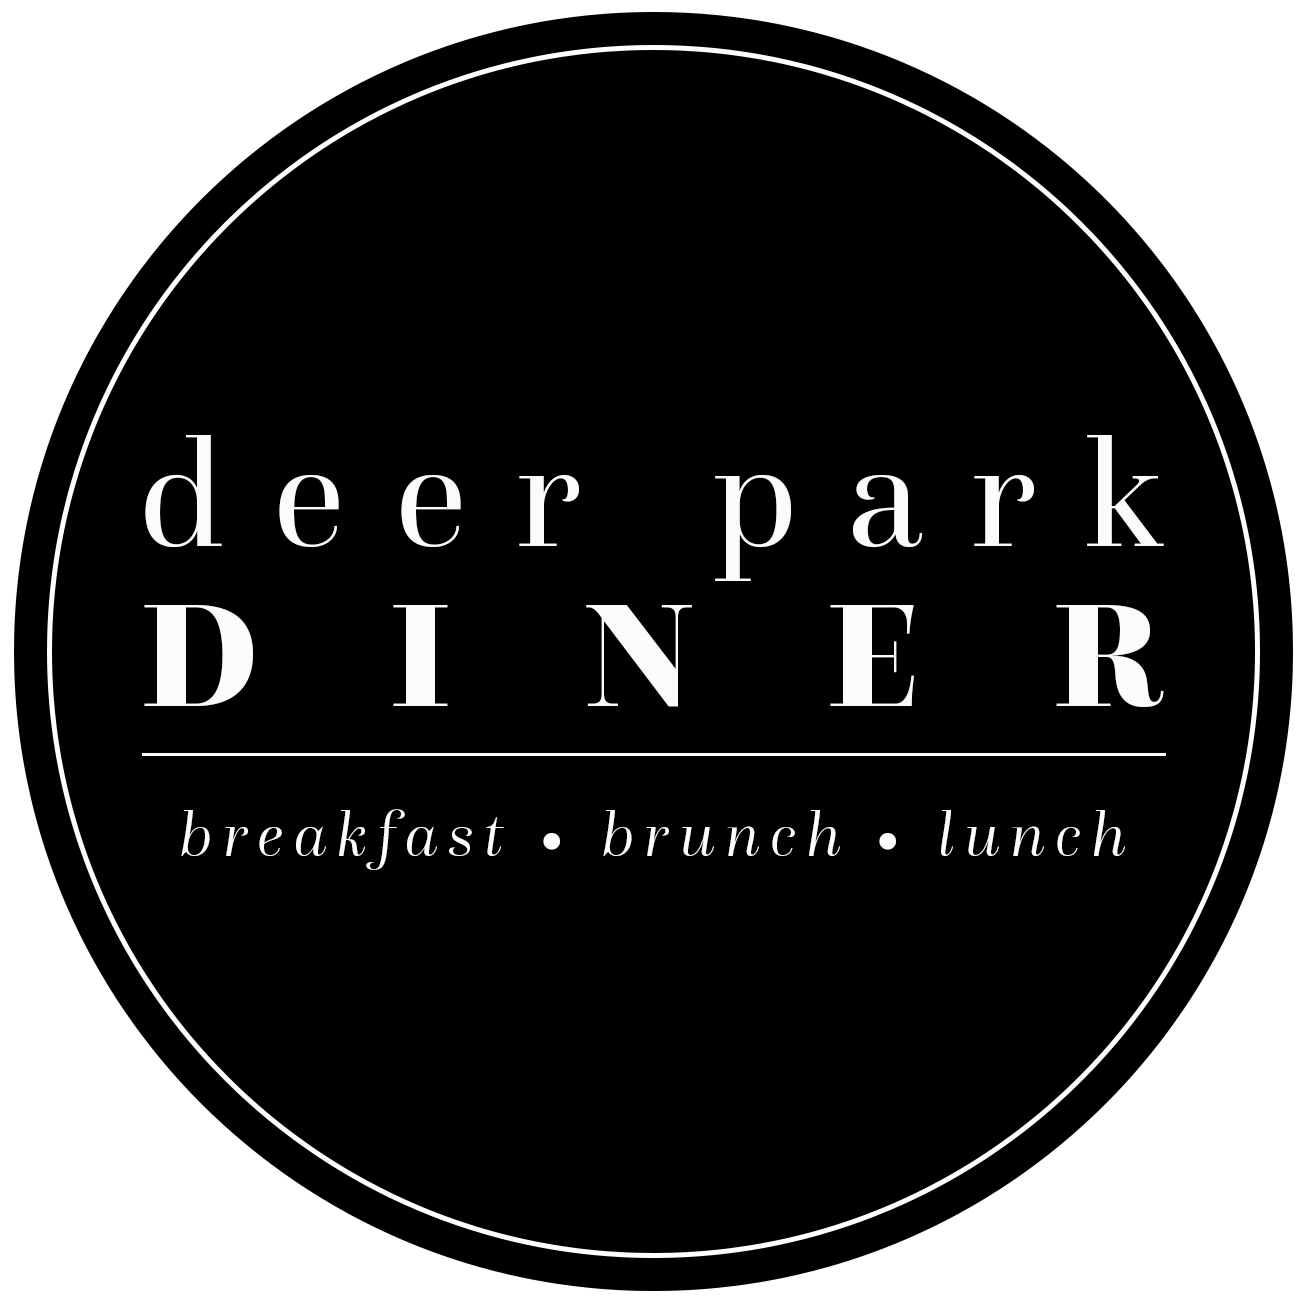 Deer Park Diner